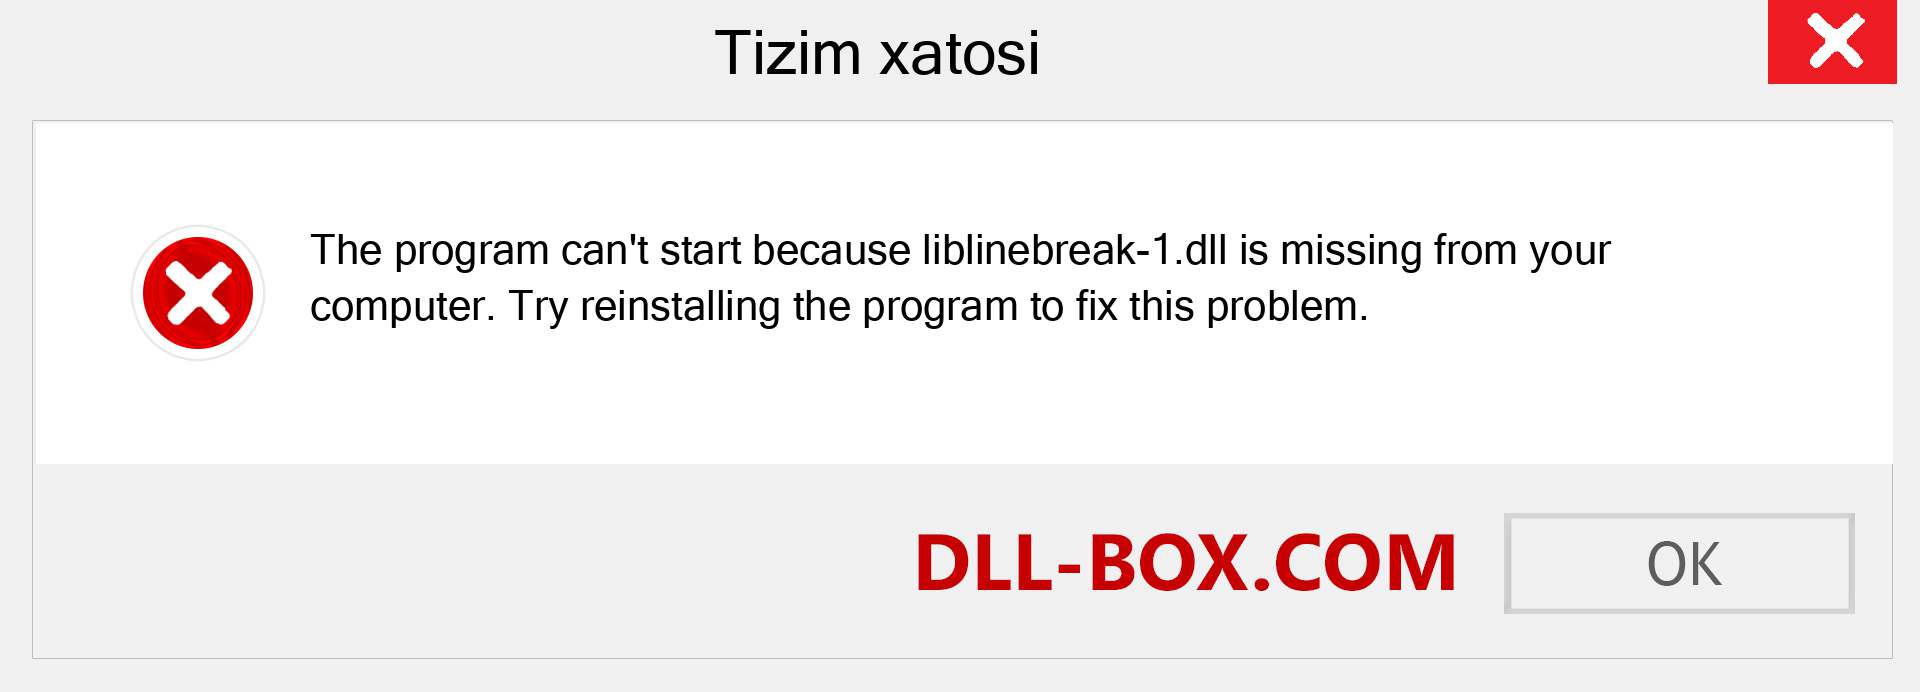 liblinebreak-1.dll fayli yo'qolganmi?. Windows 7, 8, 10 uchun yuklab olish - Windowsda liblinebreak-1 dll etishmayotgan xatoni tuzating, rasmlar, rasmlar